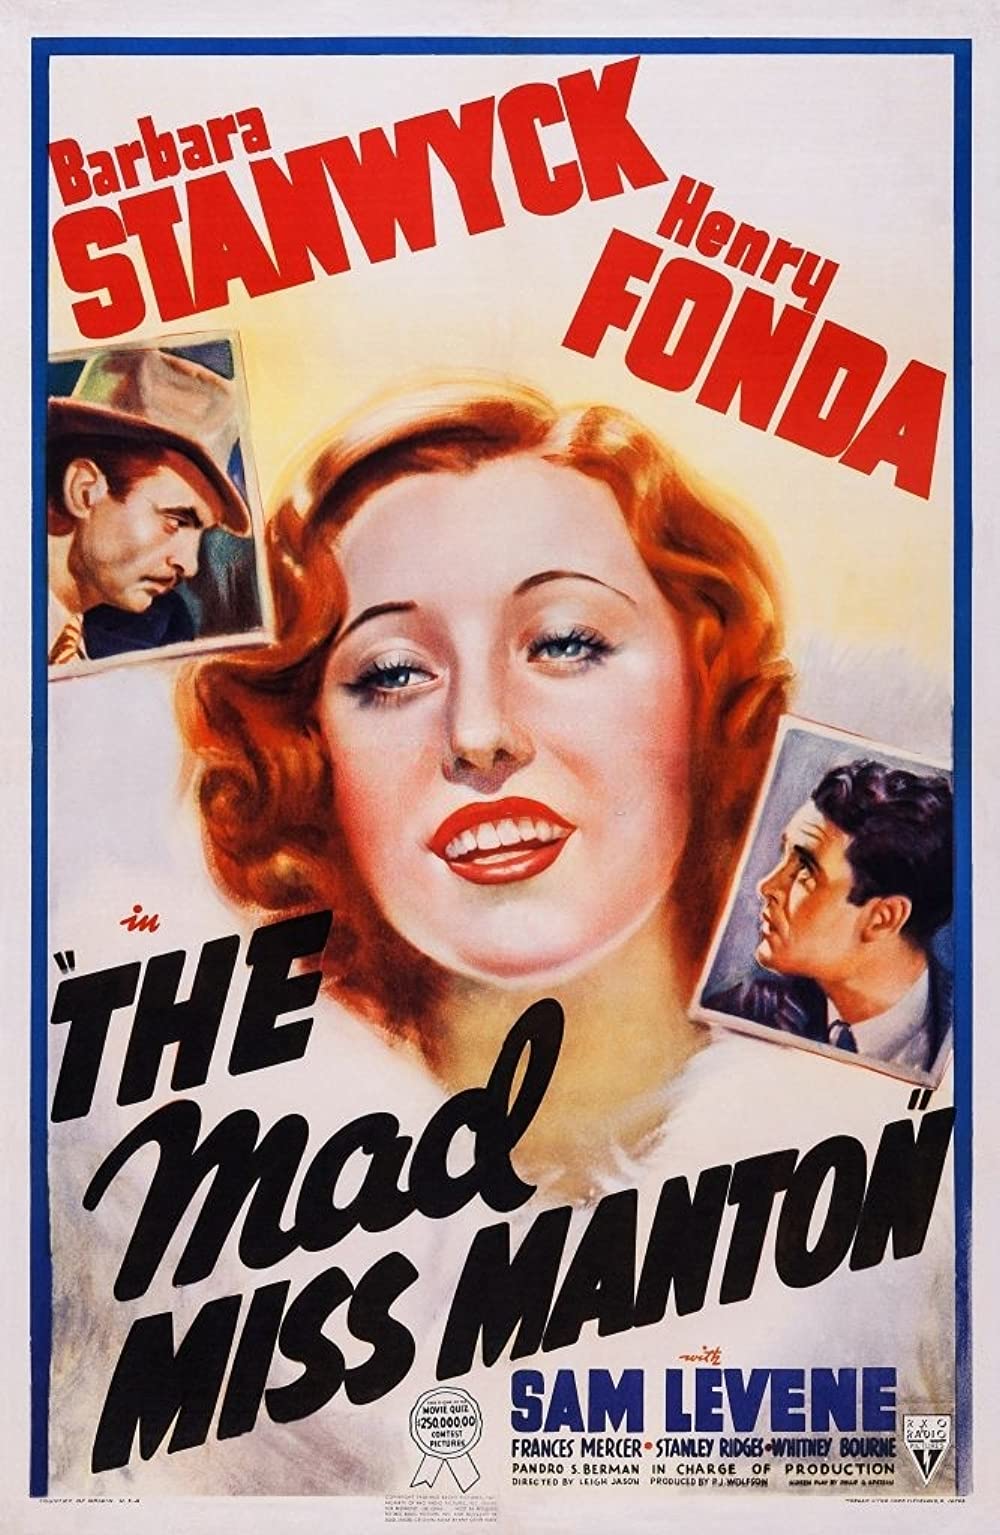 ดูหนังออนไลน์ฟรี The Mad Miss Manton (1938) เดอะ แมด มิส แมนตัน